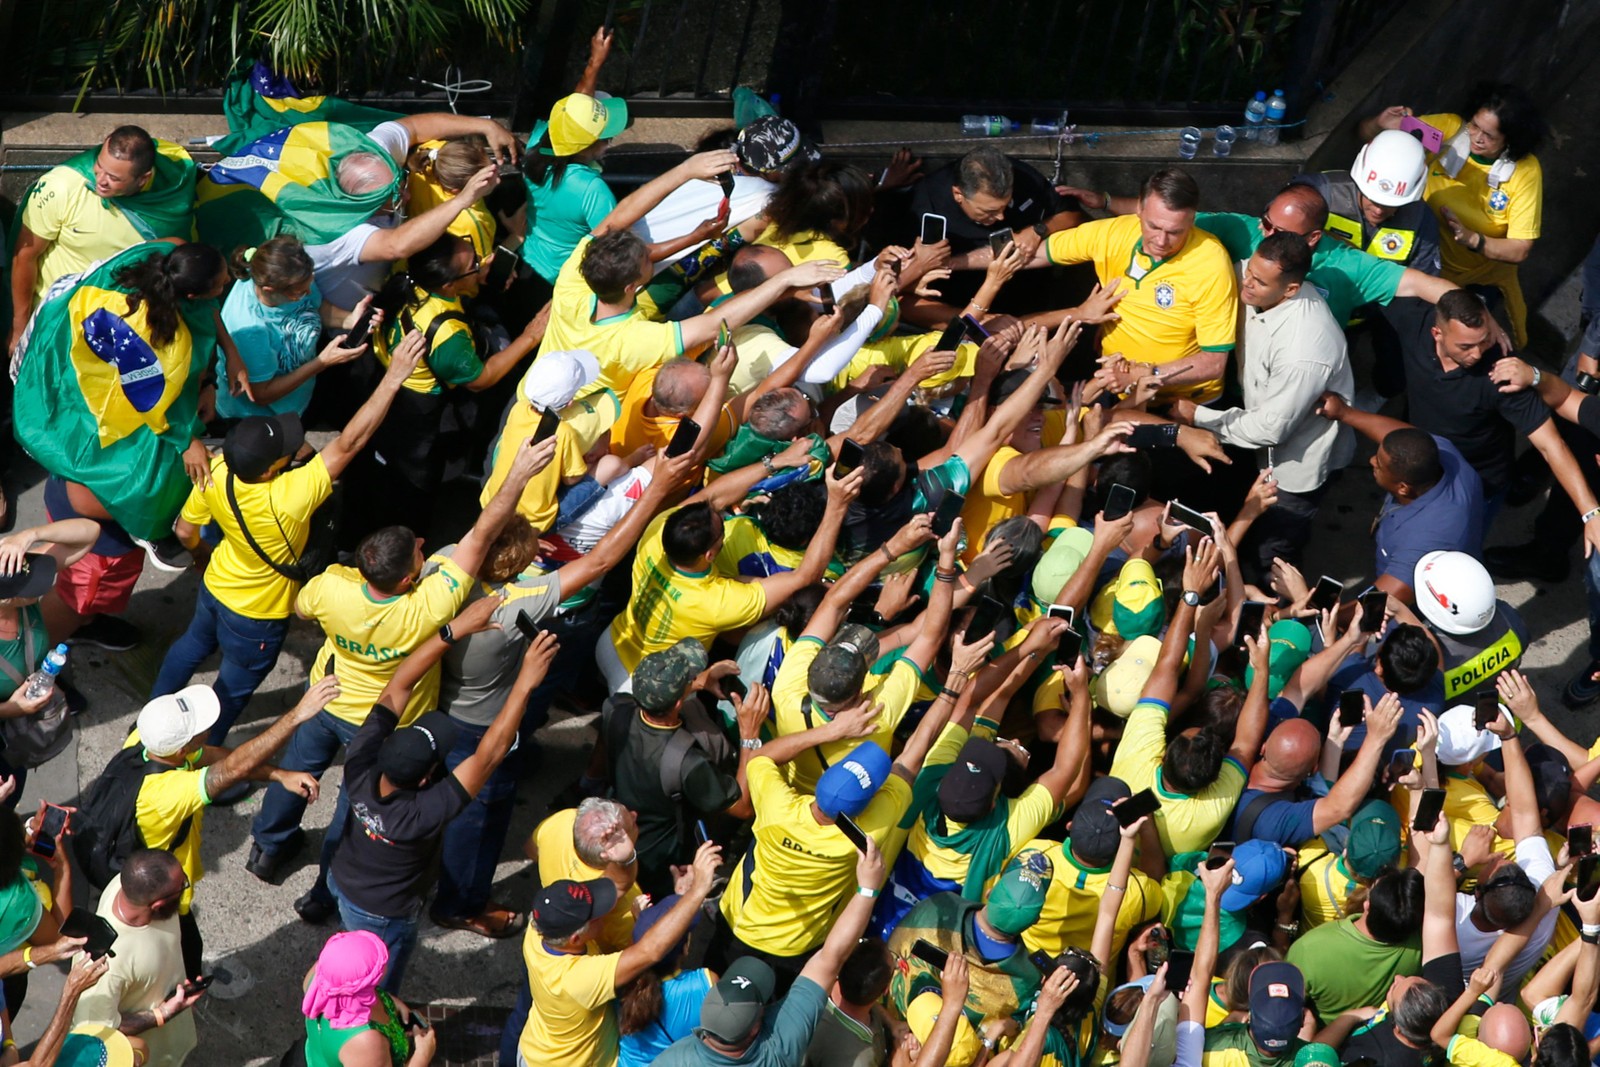 Apoiadores reagem à chegada de Jair Bolsonaro no ato na Avenida Paulista — Foto: Miguel SCHINCARIOL / AFP